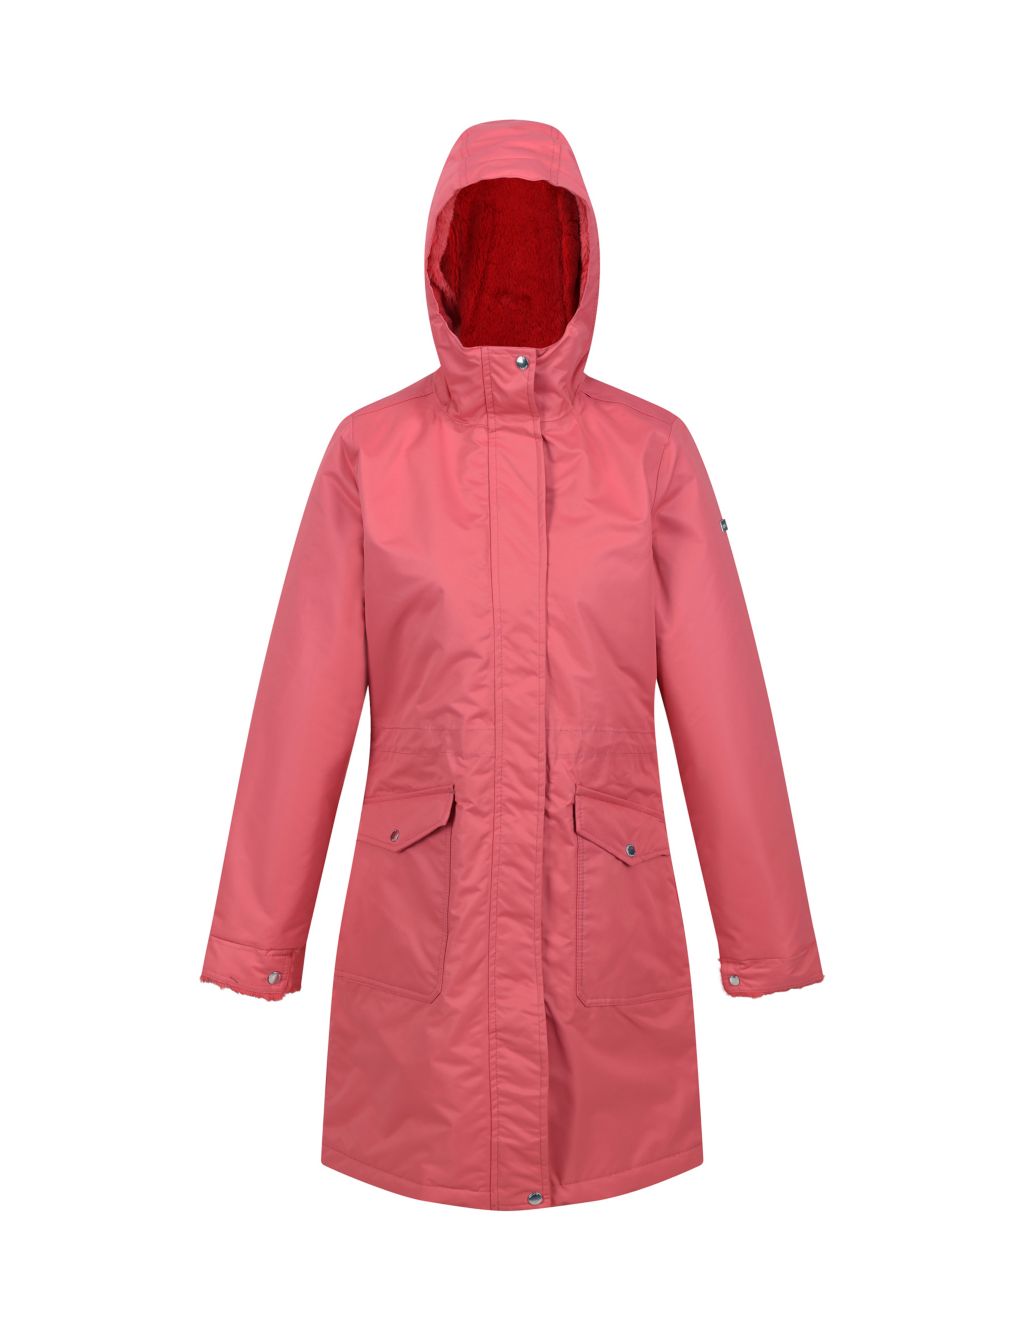 Romine Waterproof Hooded Parka Coat 1 of 8